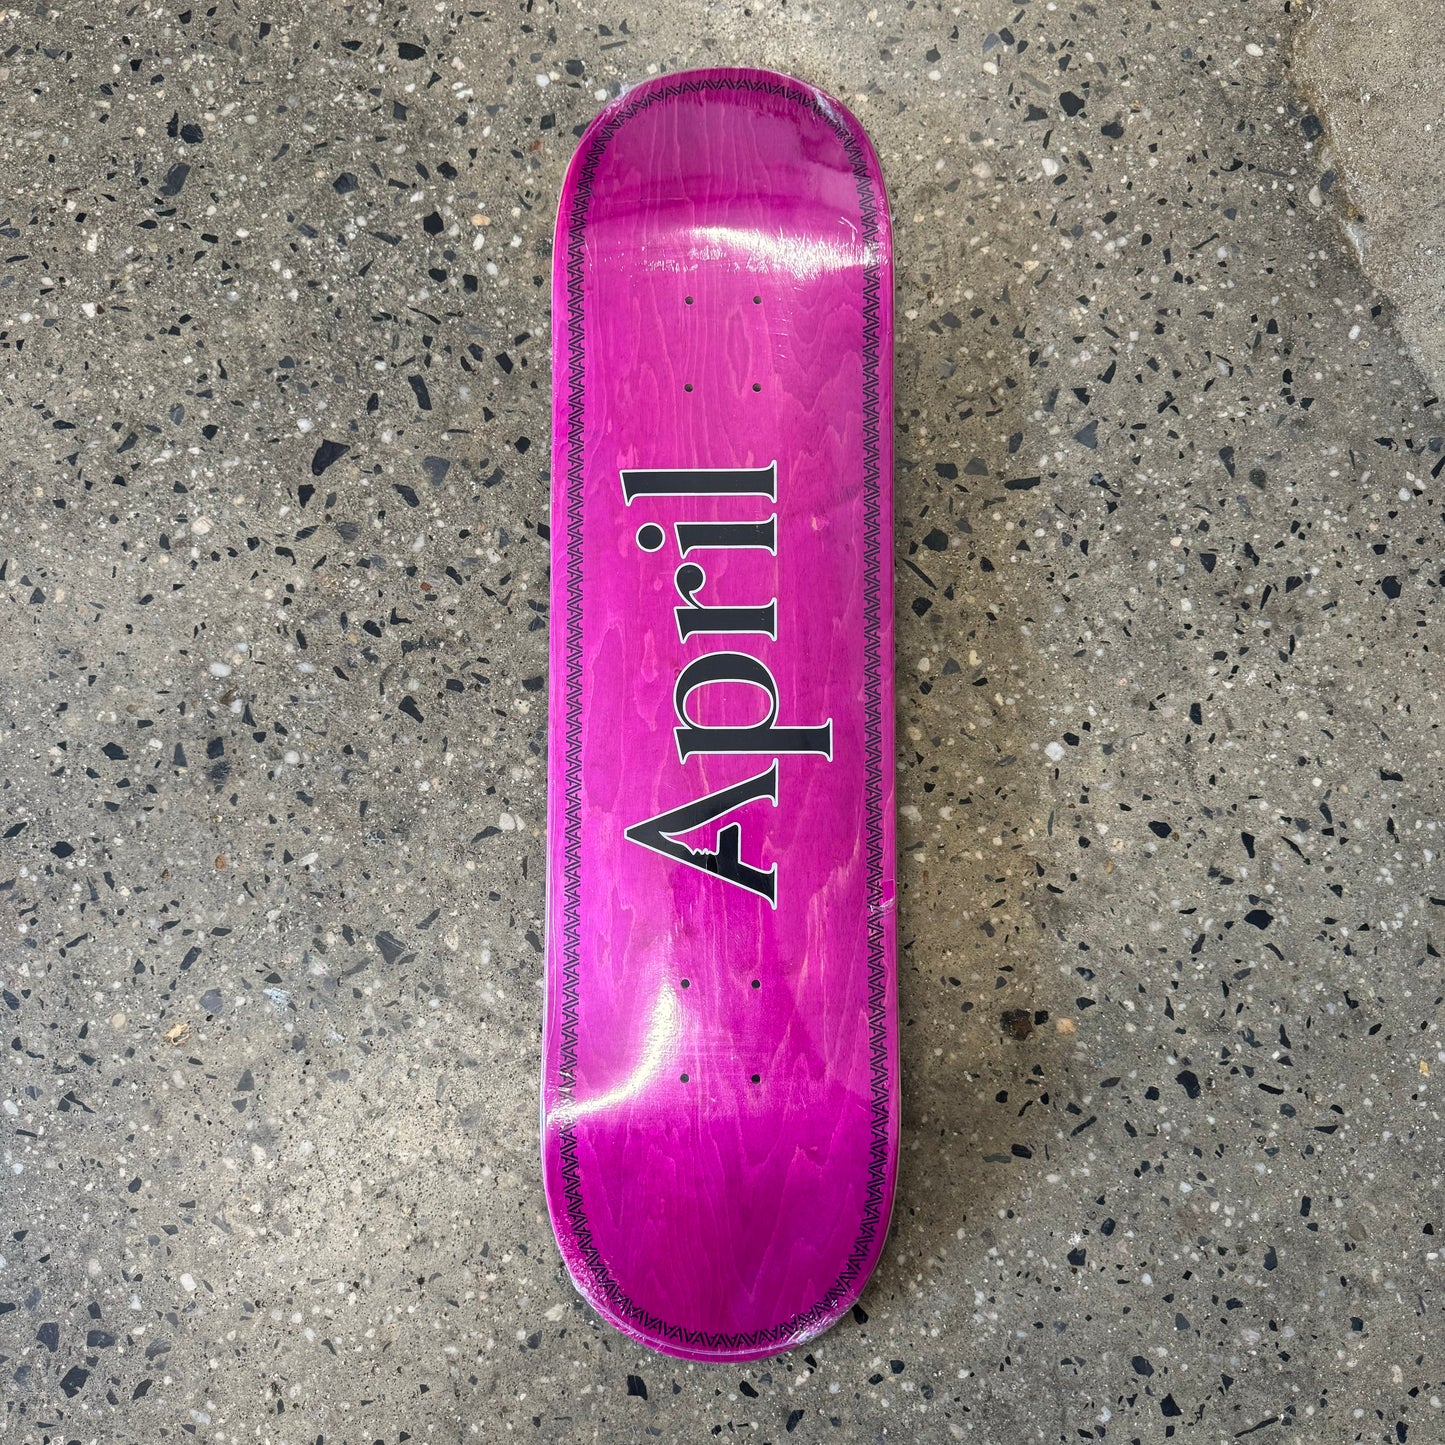 black April logo on pink skate deck